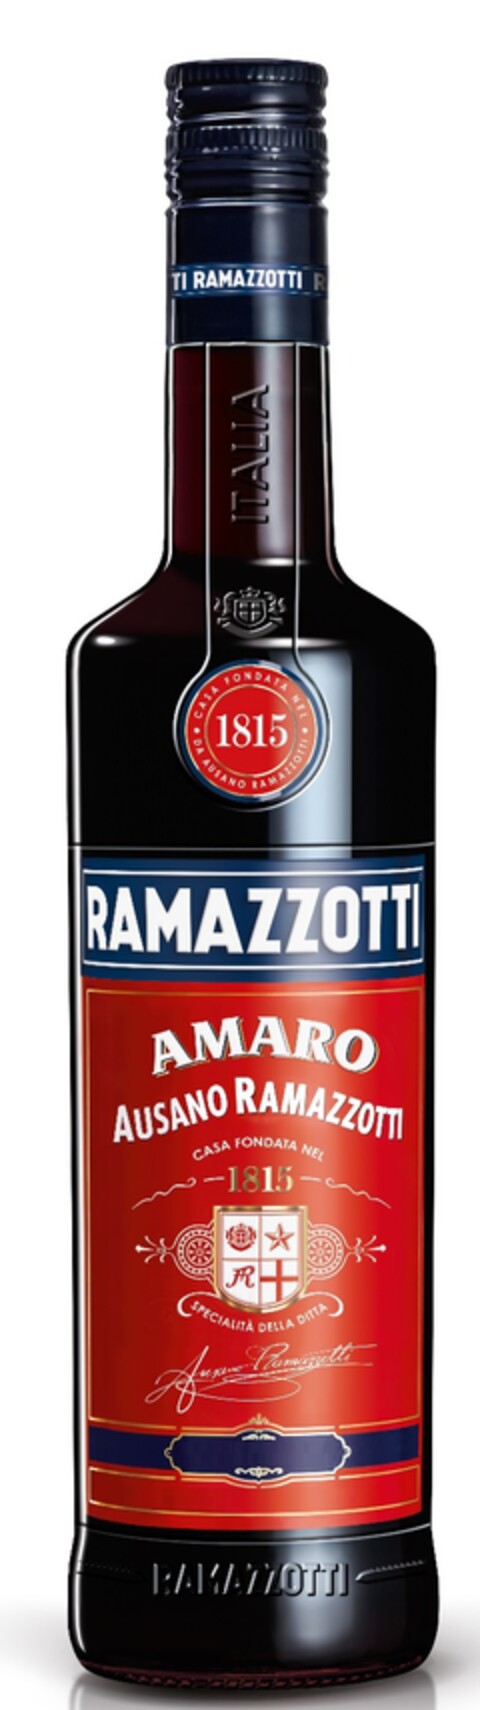 RAMAZZOTTI AMARO AUSANO RAMAZZOTTI casa fondata nel 1815 specialita della ditta Ausano Ramazzotti ITALIA Logo (EUIPO, 29.05.2018)